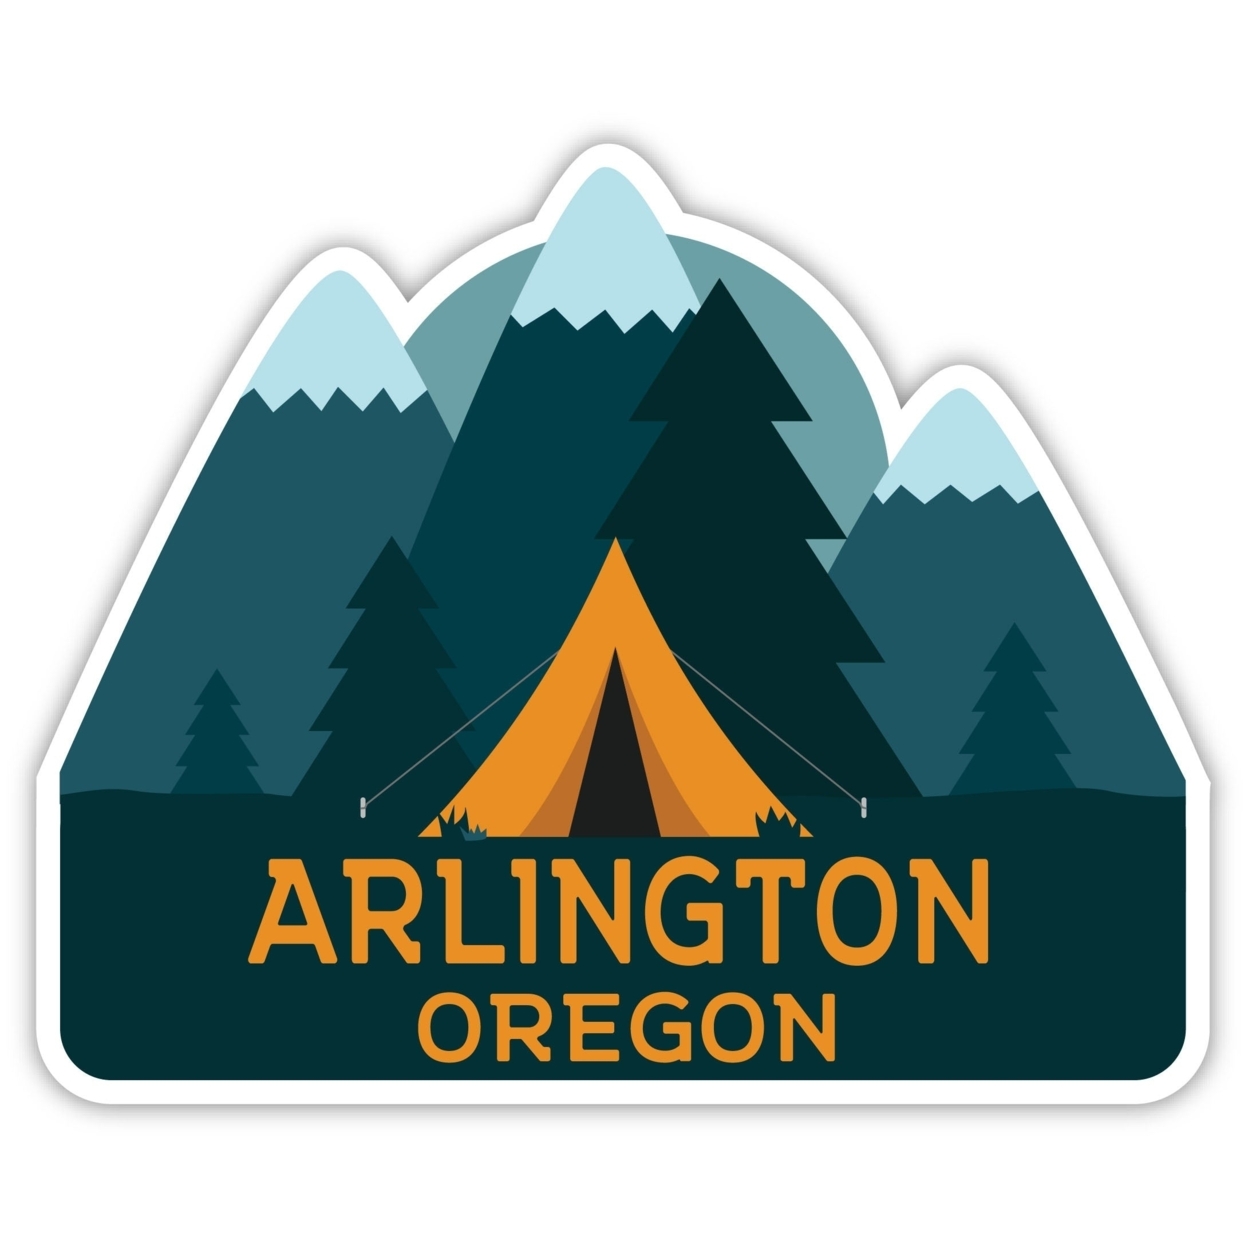 Arlington Oregon Souvenir Decorative Stickers (Choose Theme And Size) - 4-Pack, 4-Inch, Tent